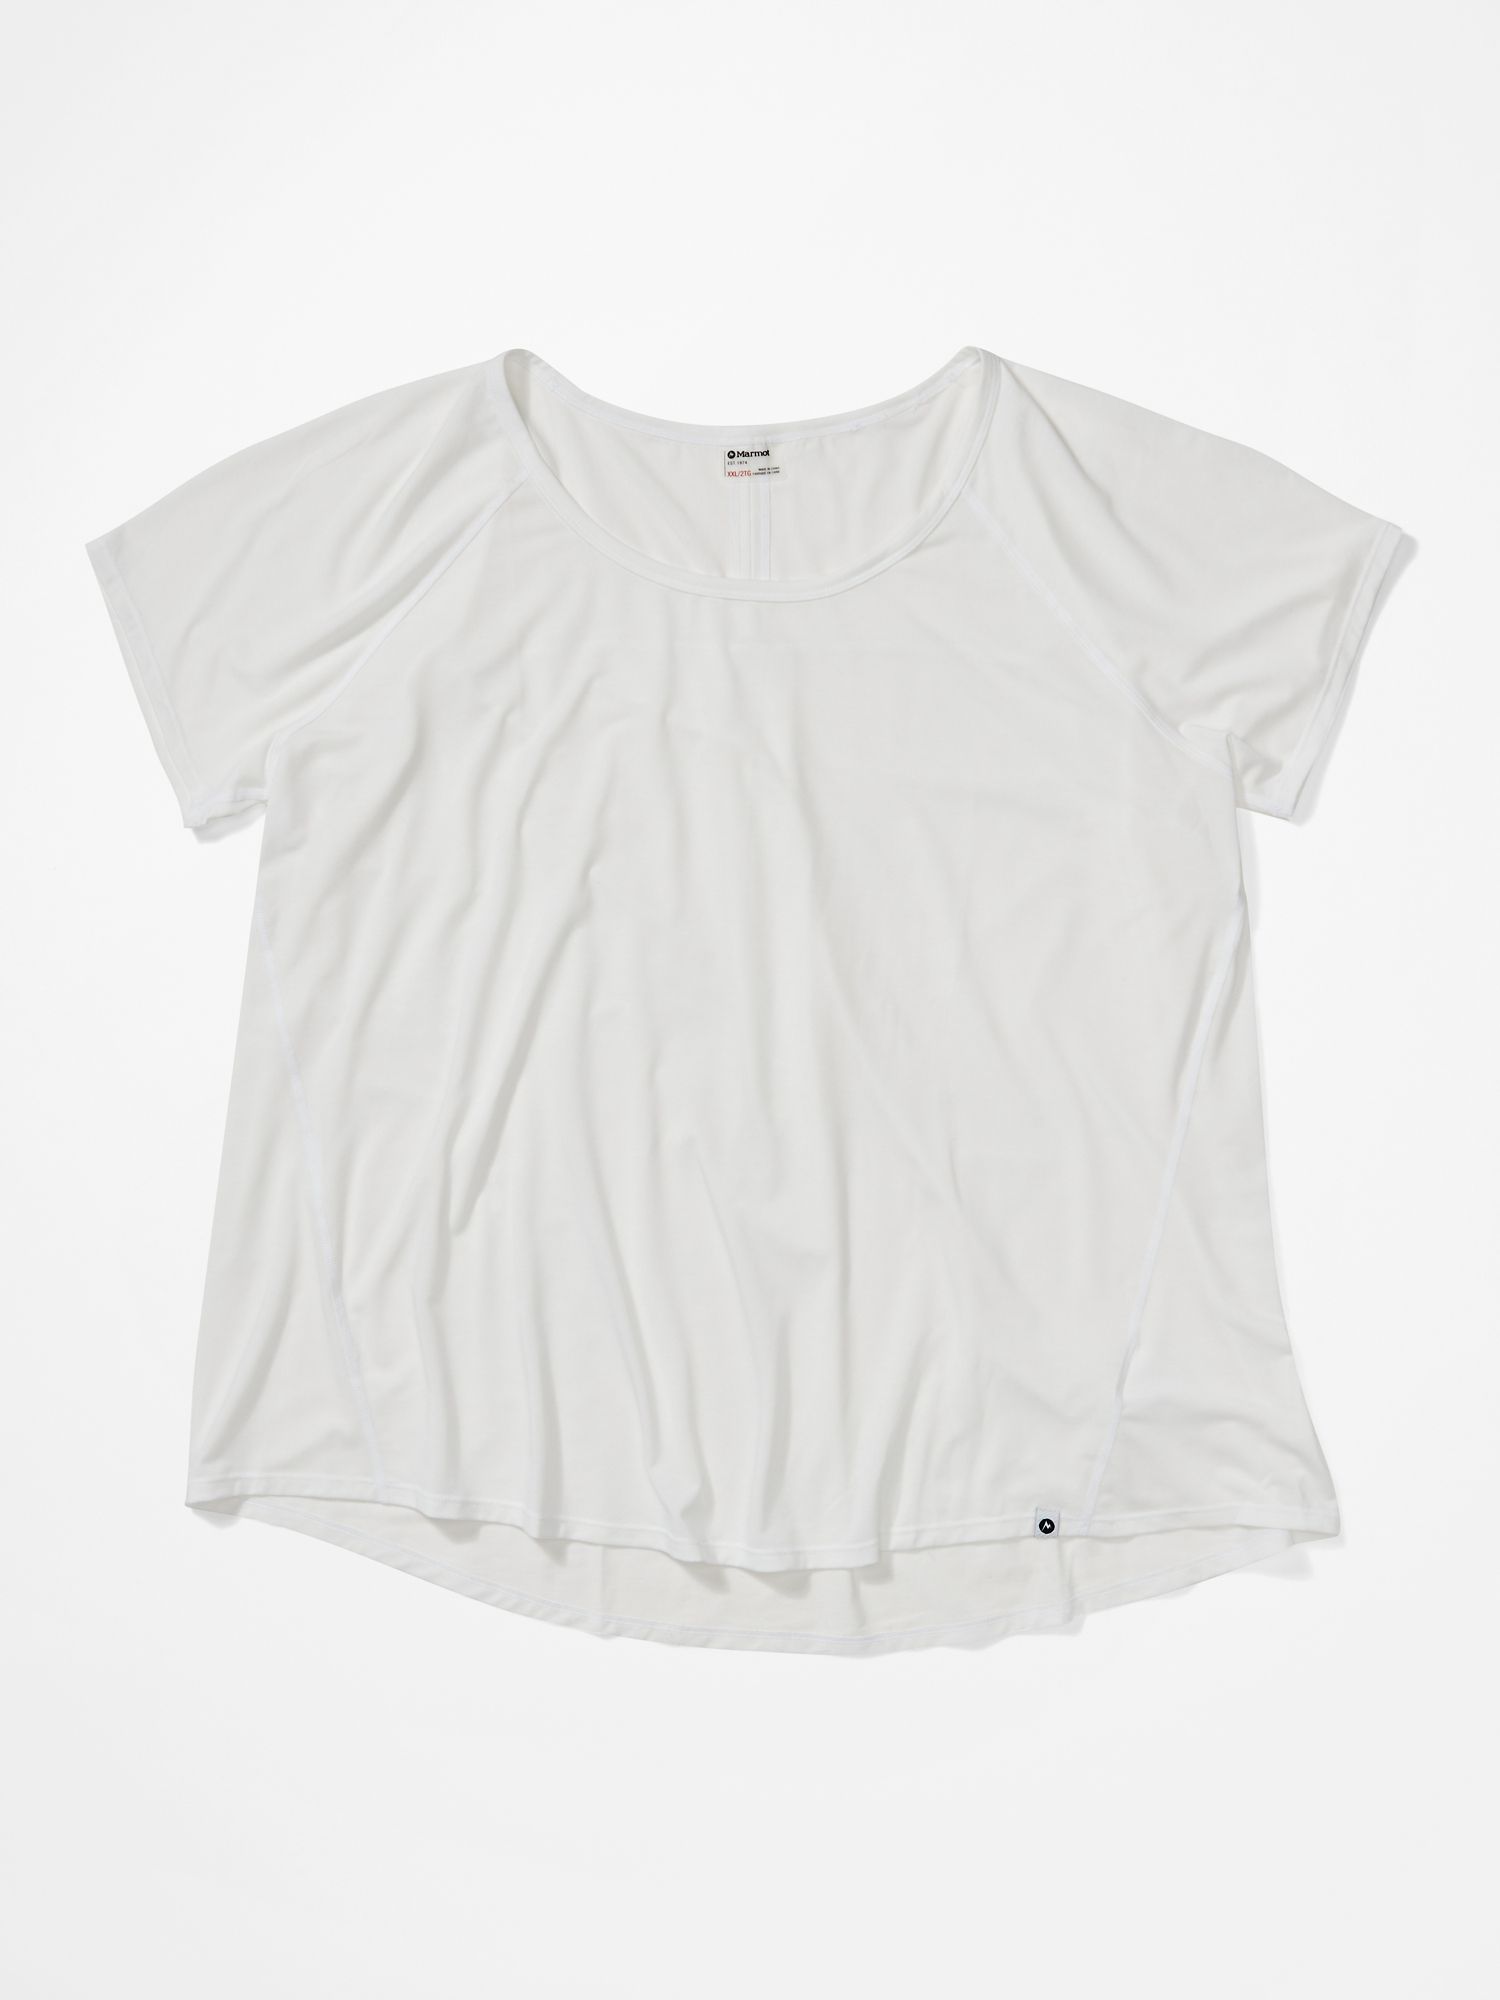 Women's Neaera Short-Sleeve Shirt Plus